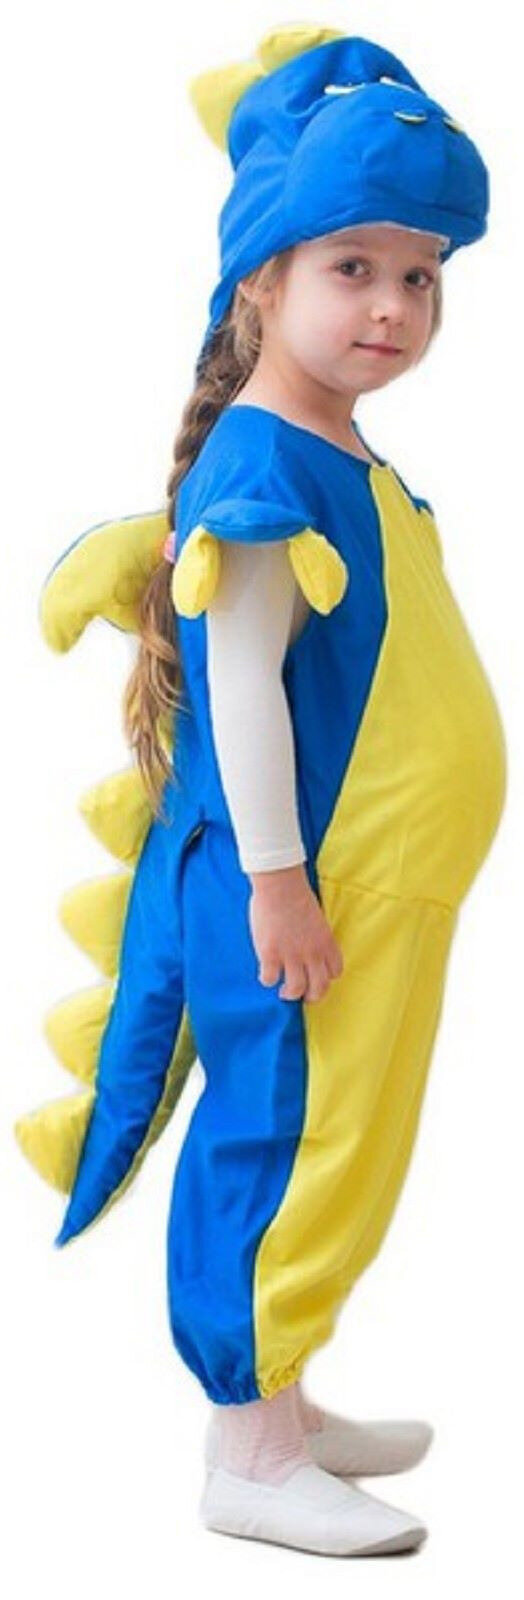 Карнавальный костюм детский "Дракончик", праздничный наряд для мальчика и девочки (шапка, комбинезон, набивной живот), 3-5 лет, рост 104-116 см